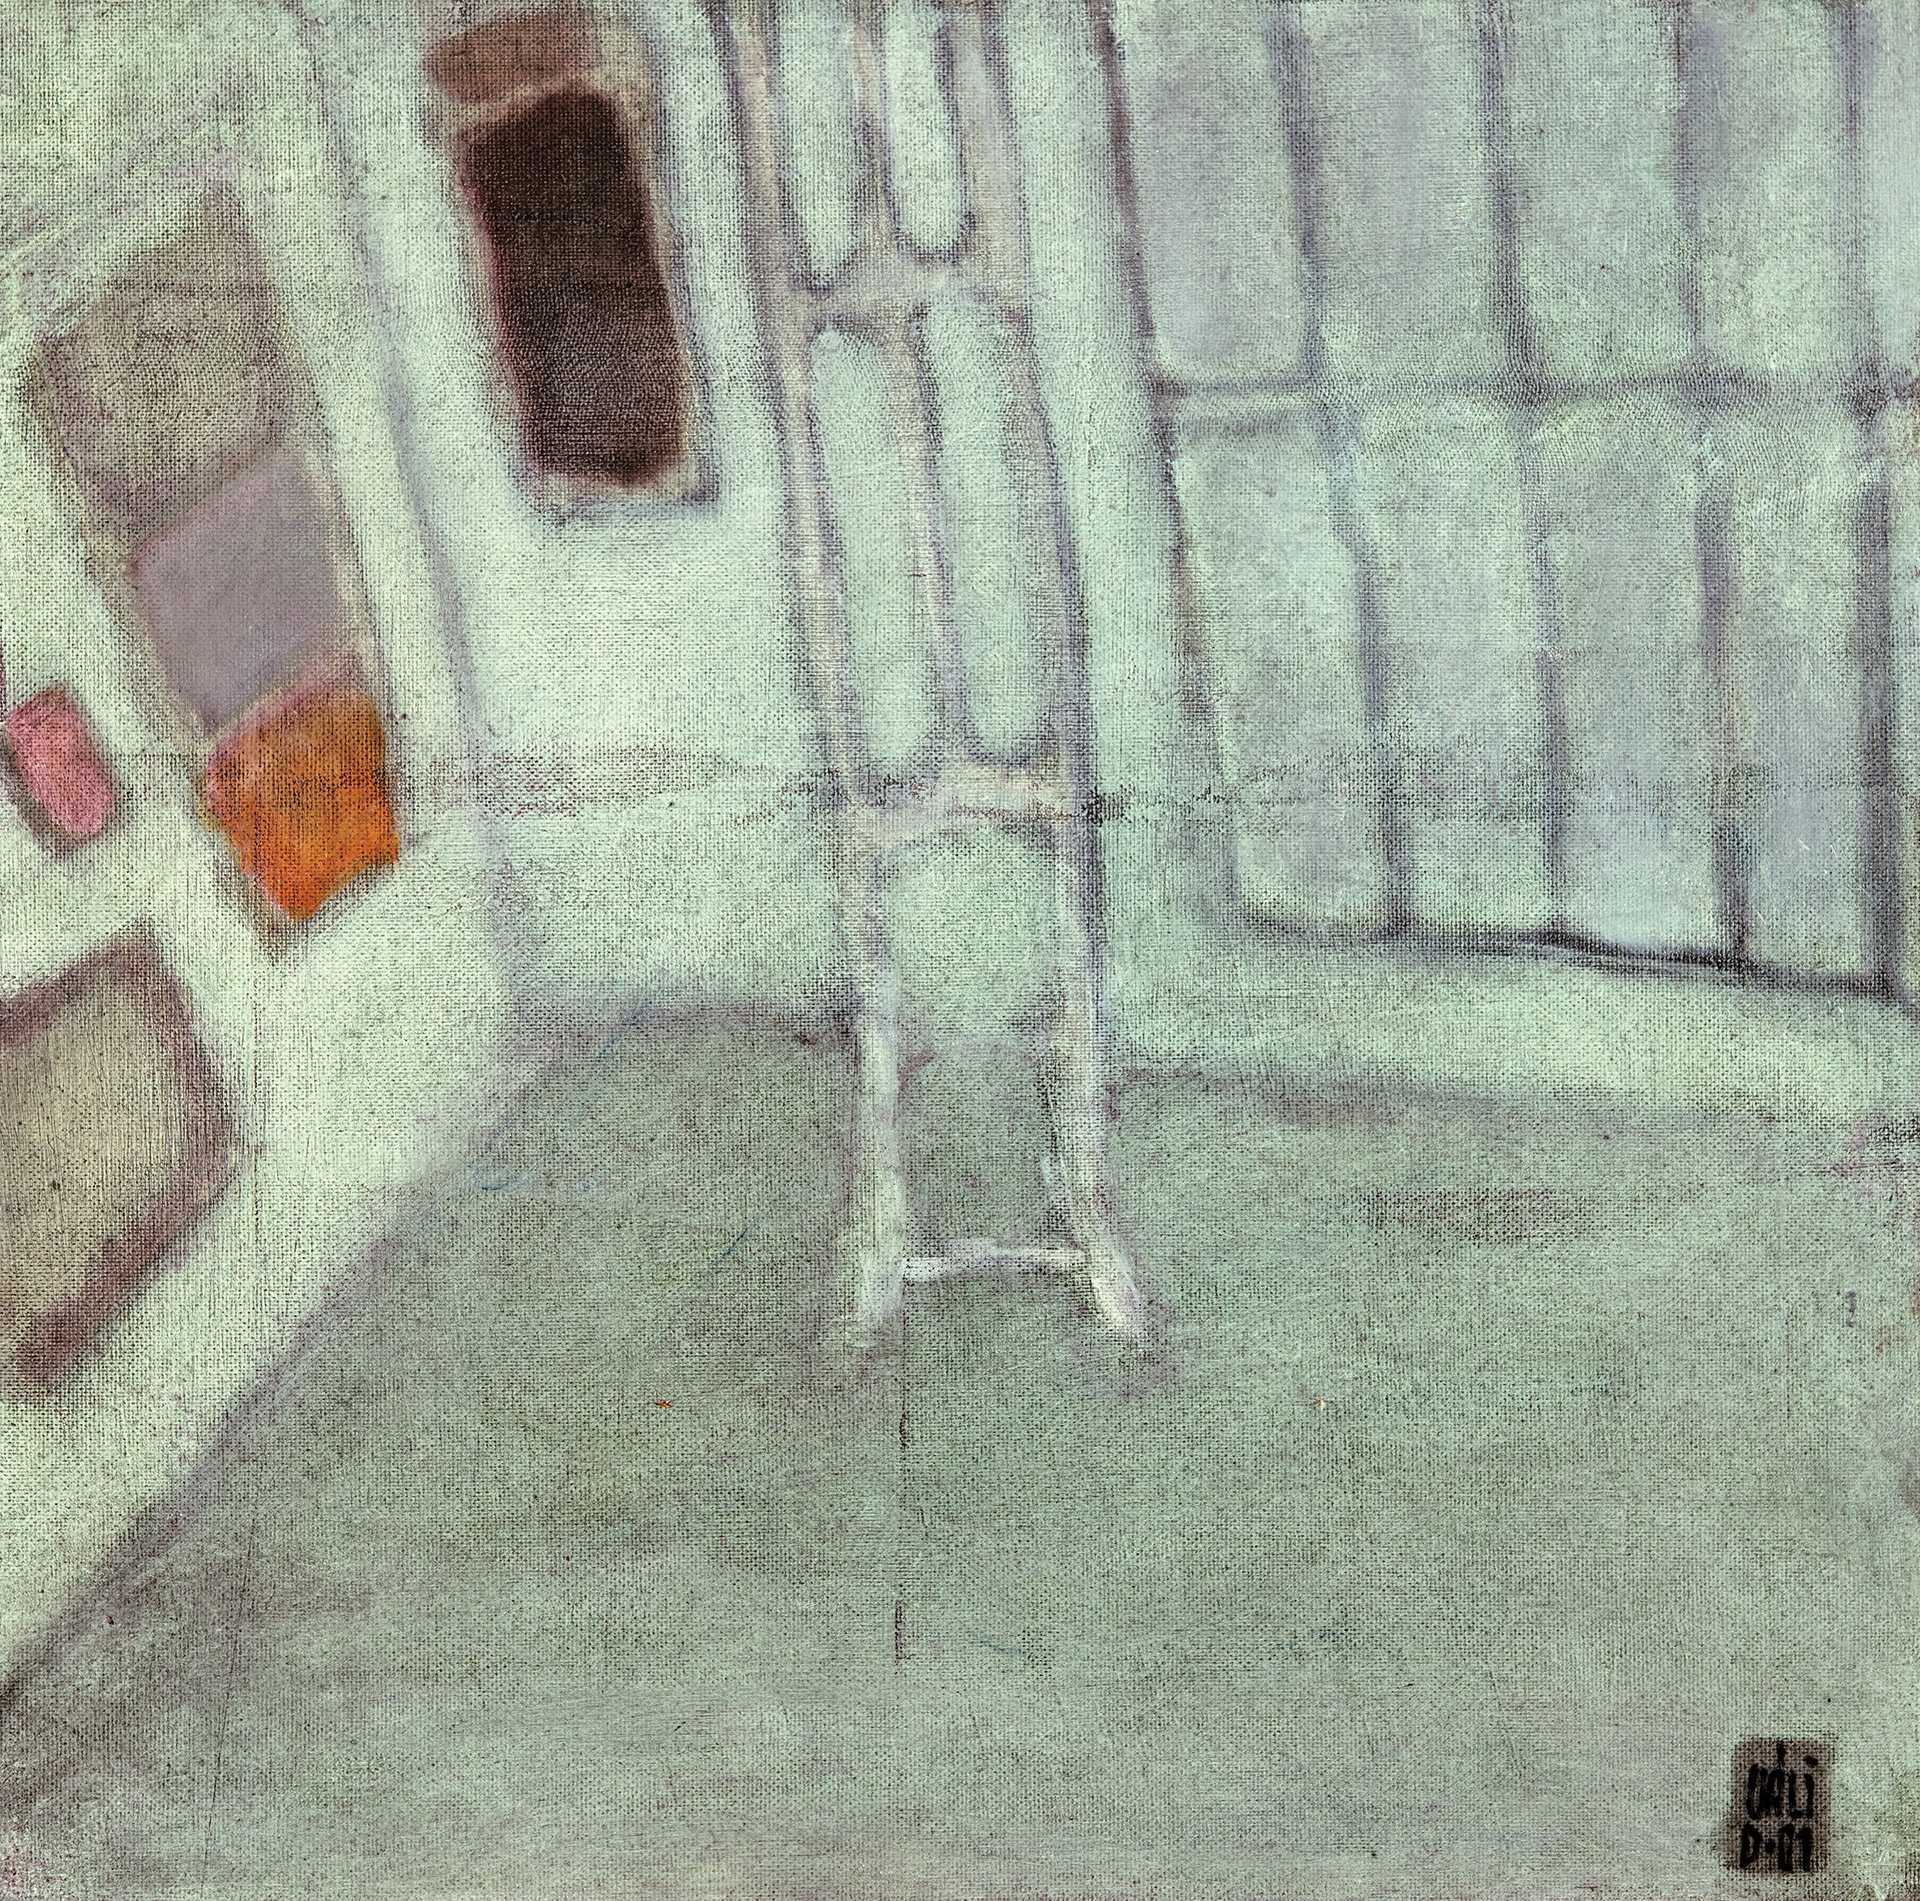 Váli Dezső (1942-) Atelier before Work, (A/01/01), 2001